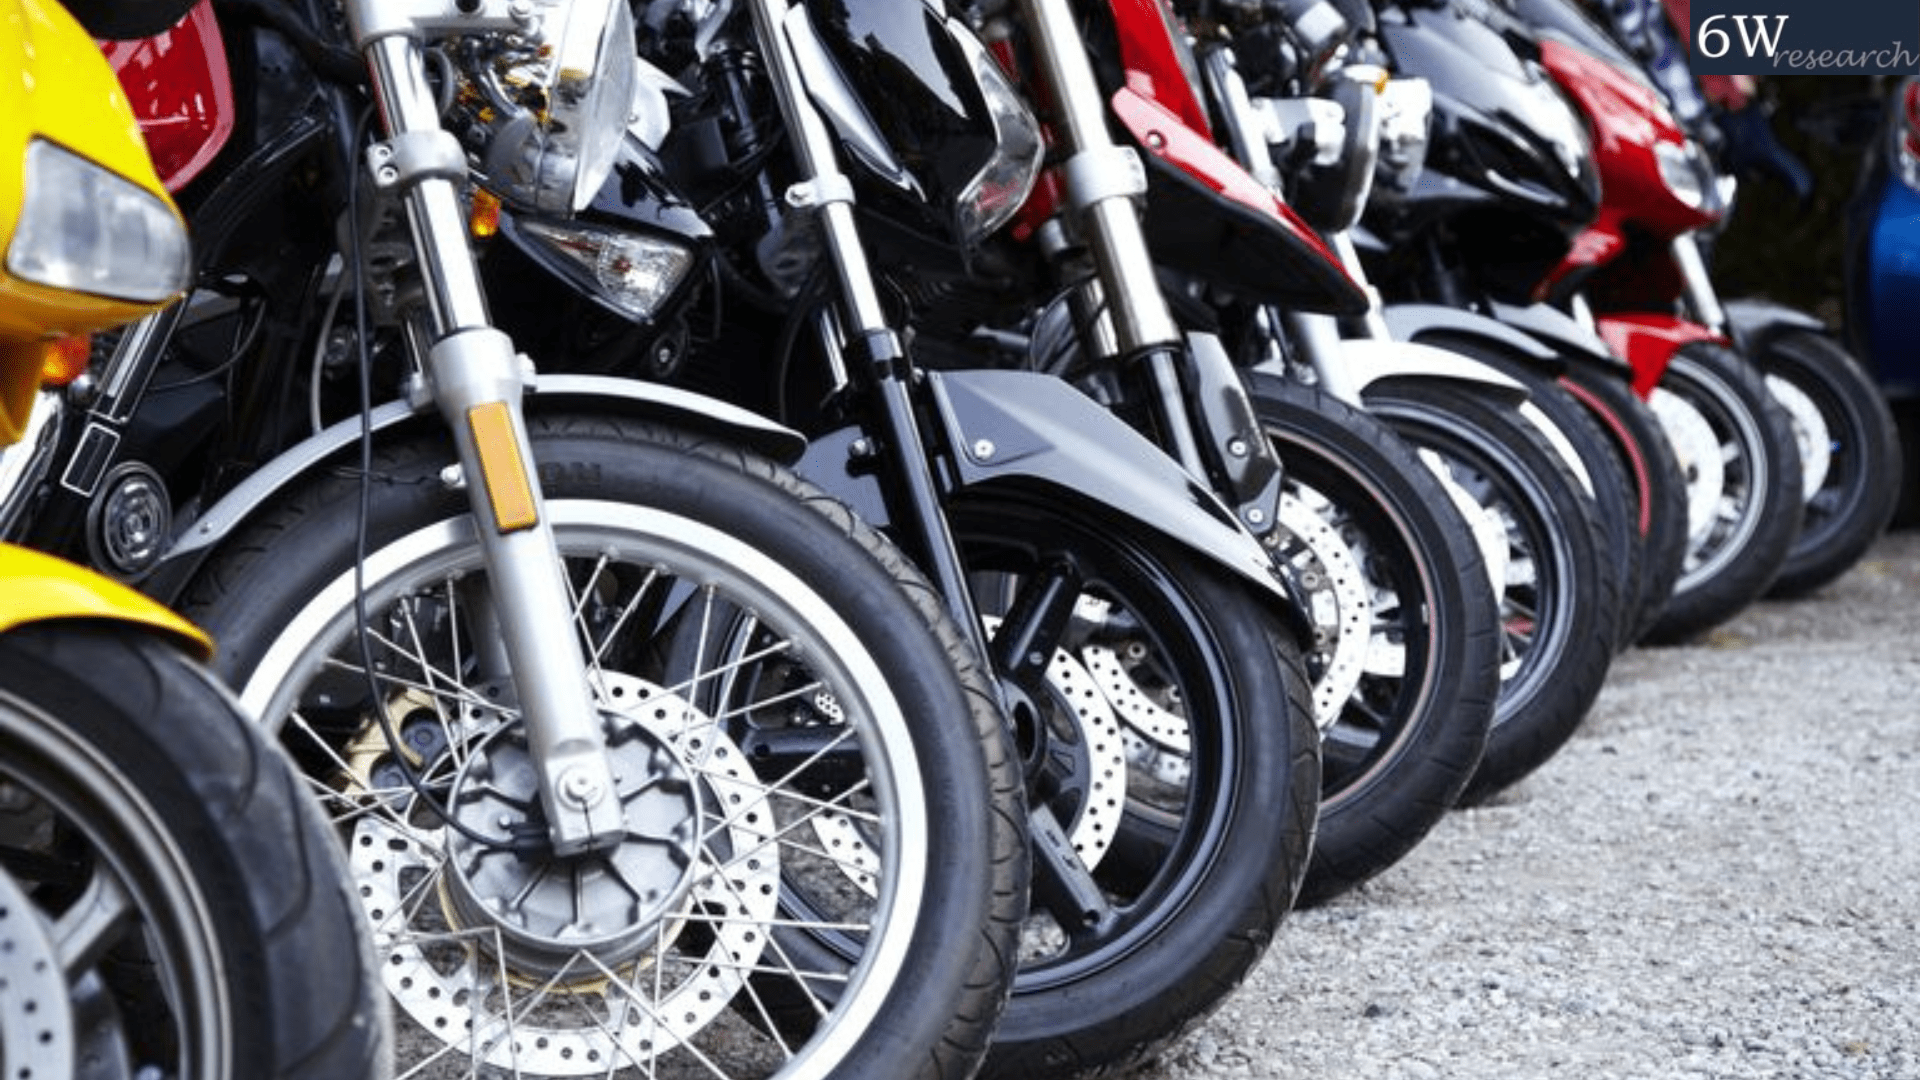 india motorcycle market